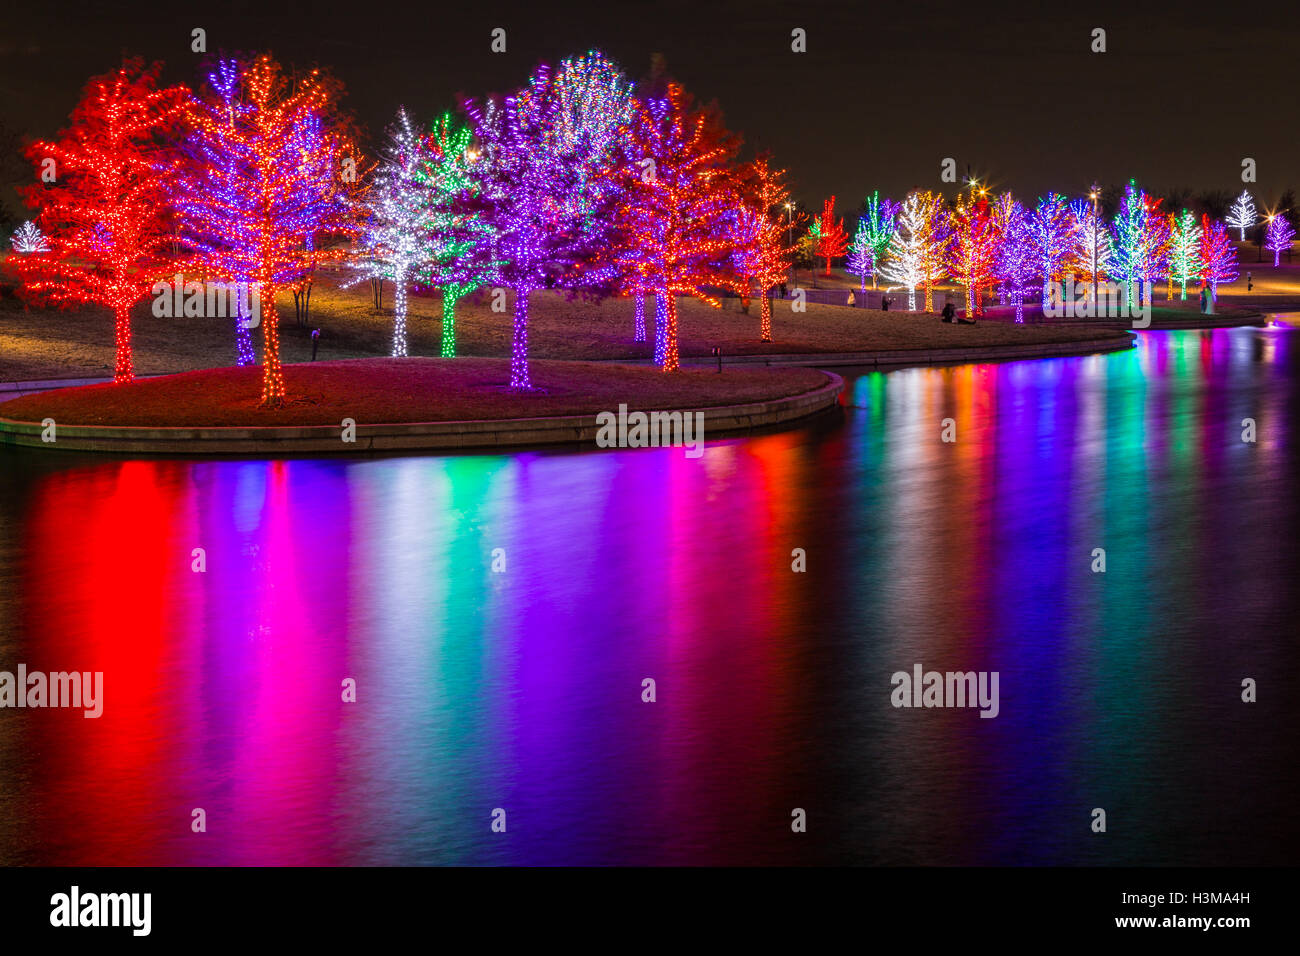 Hunderte von Bäumen sind bedeckt mit bunten Weihnachtsbeleuchtung und auf der Oberfläche dieser Teich reflektiert. Stockfoto